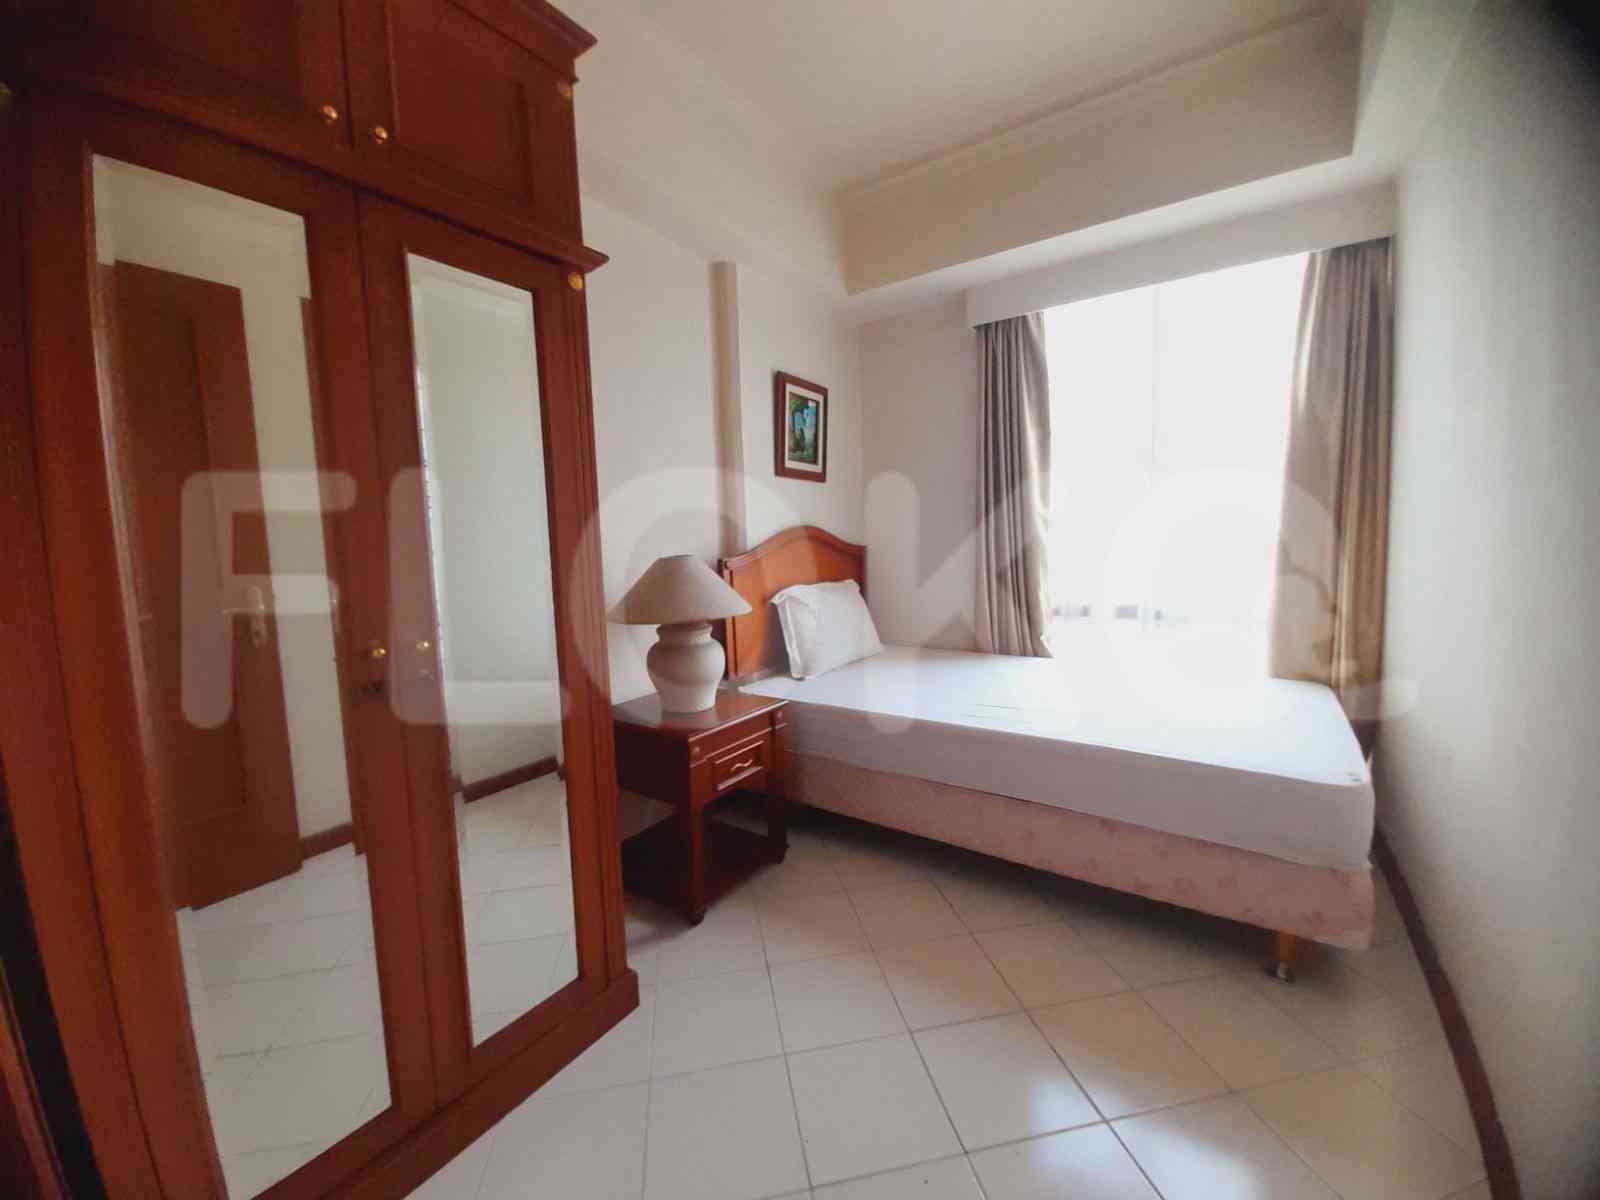 2 Bedroom on 35th Floor for Rent in Puri Casablanca - fte0f6 5